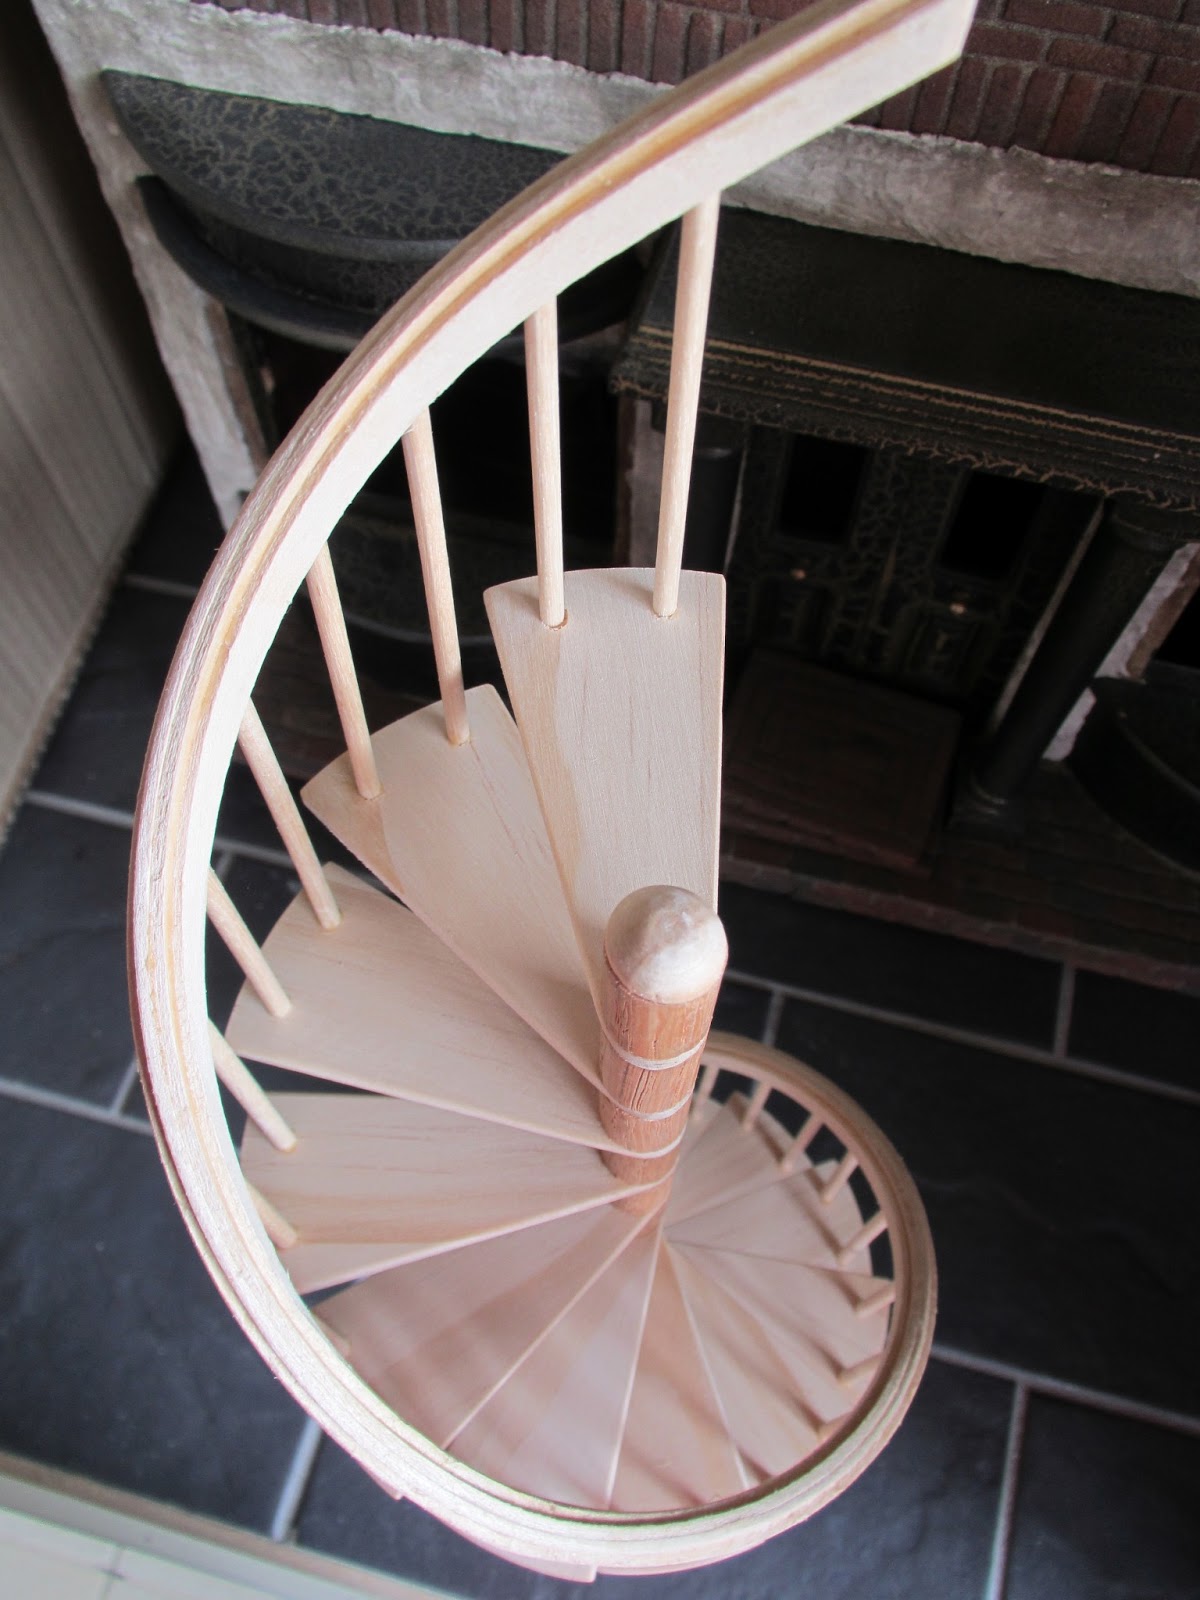 circular stairs plans